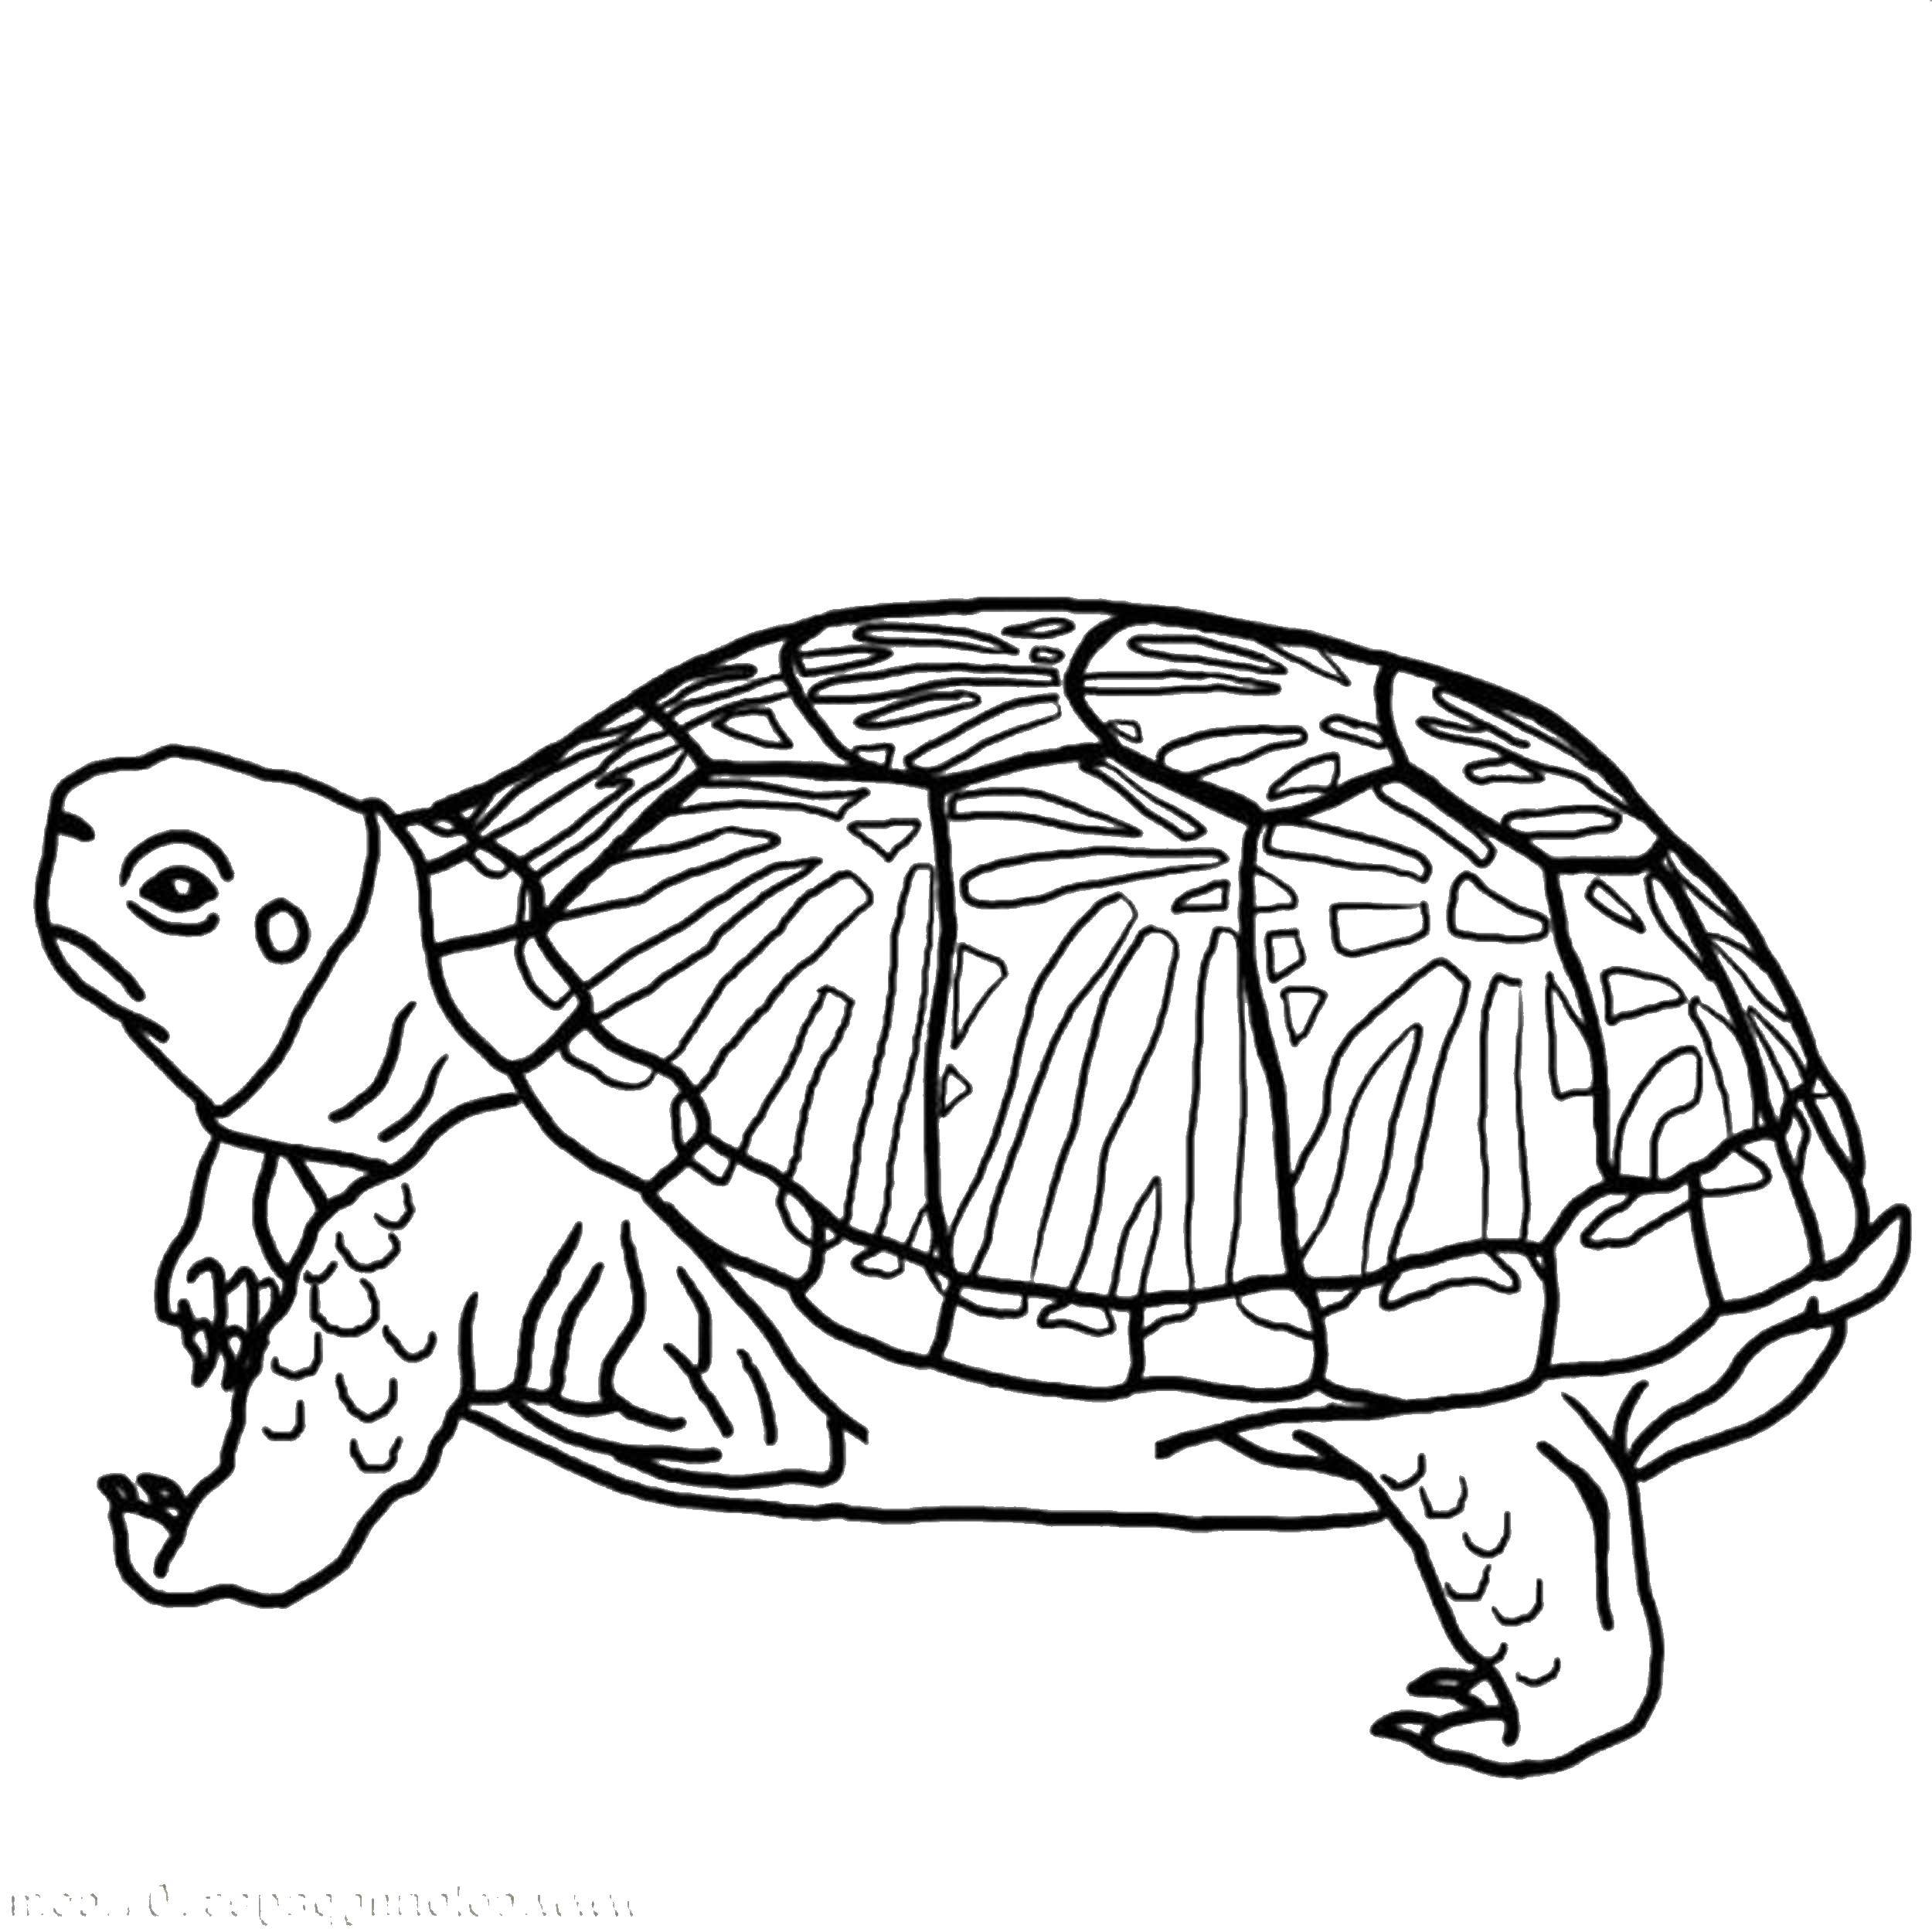 Название: Раскраска Старая черепаха. Категория: рептилии. Теги: Рептилия, черепаха.